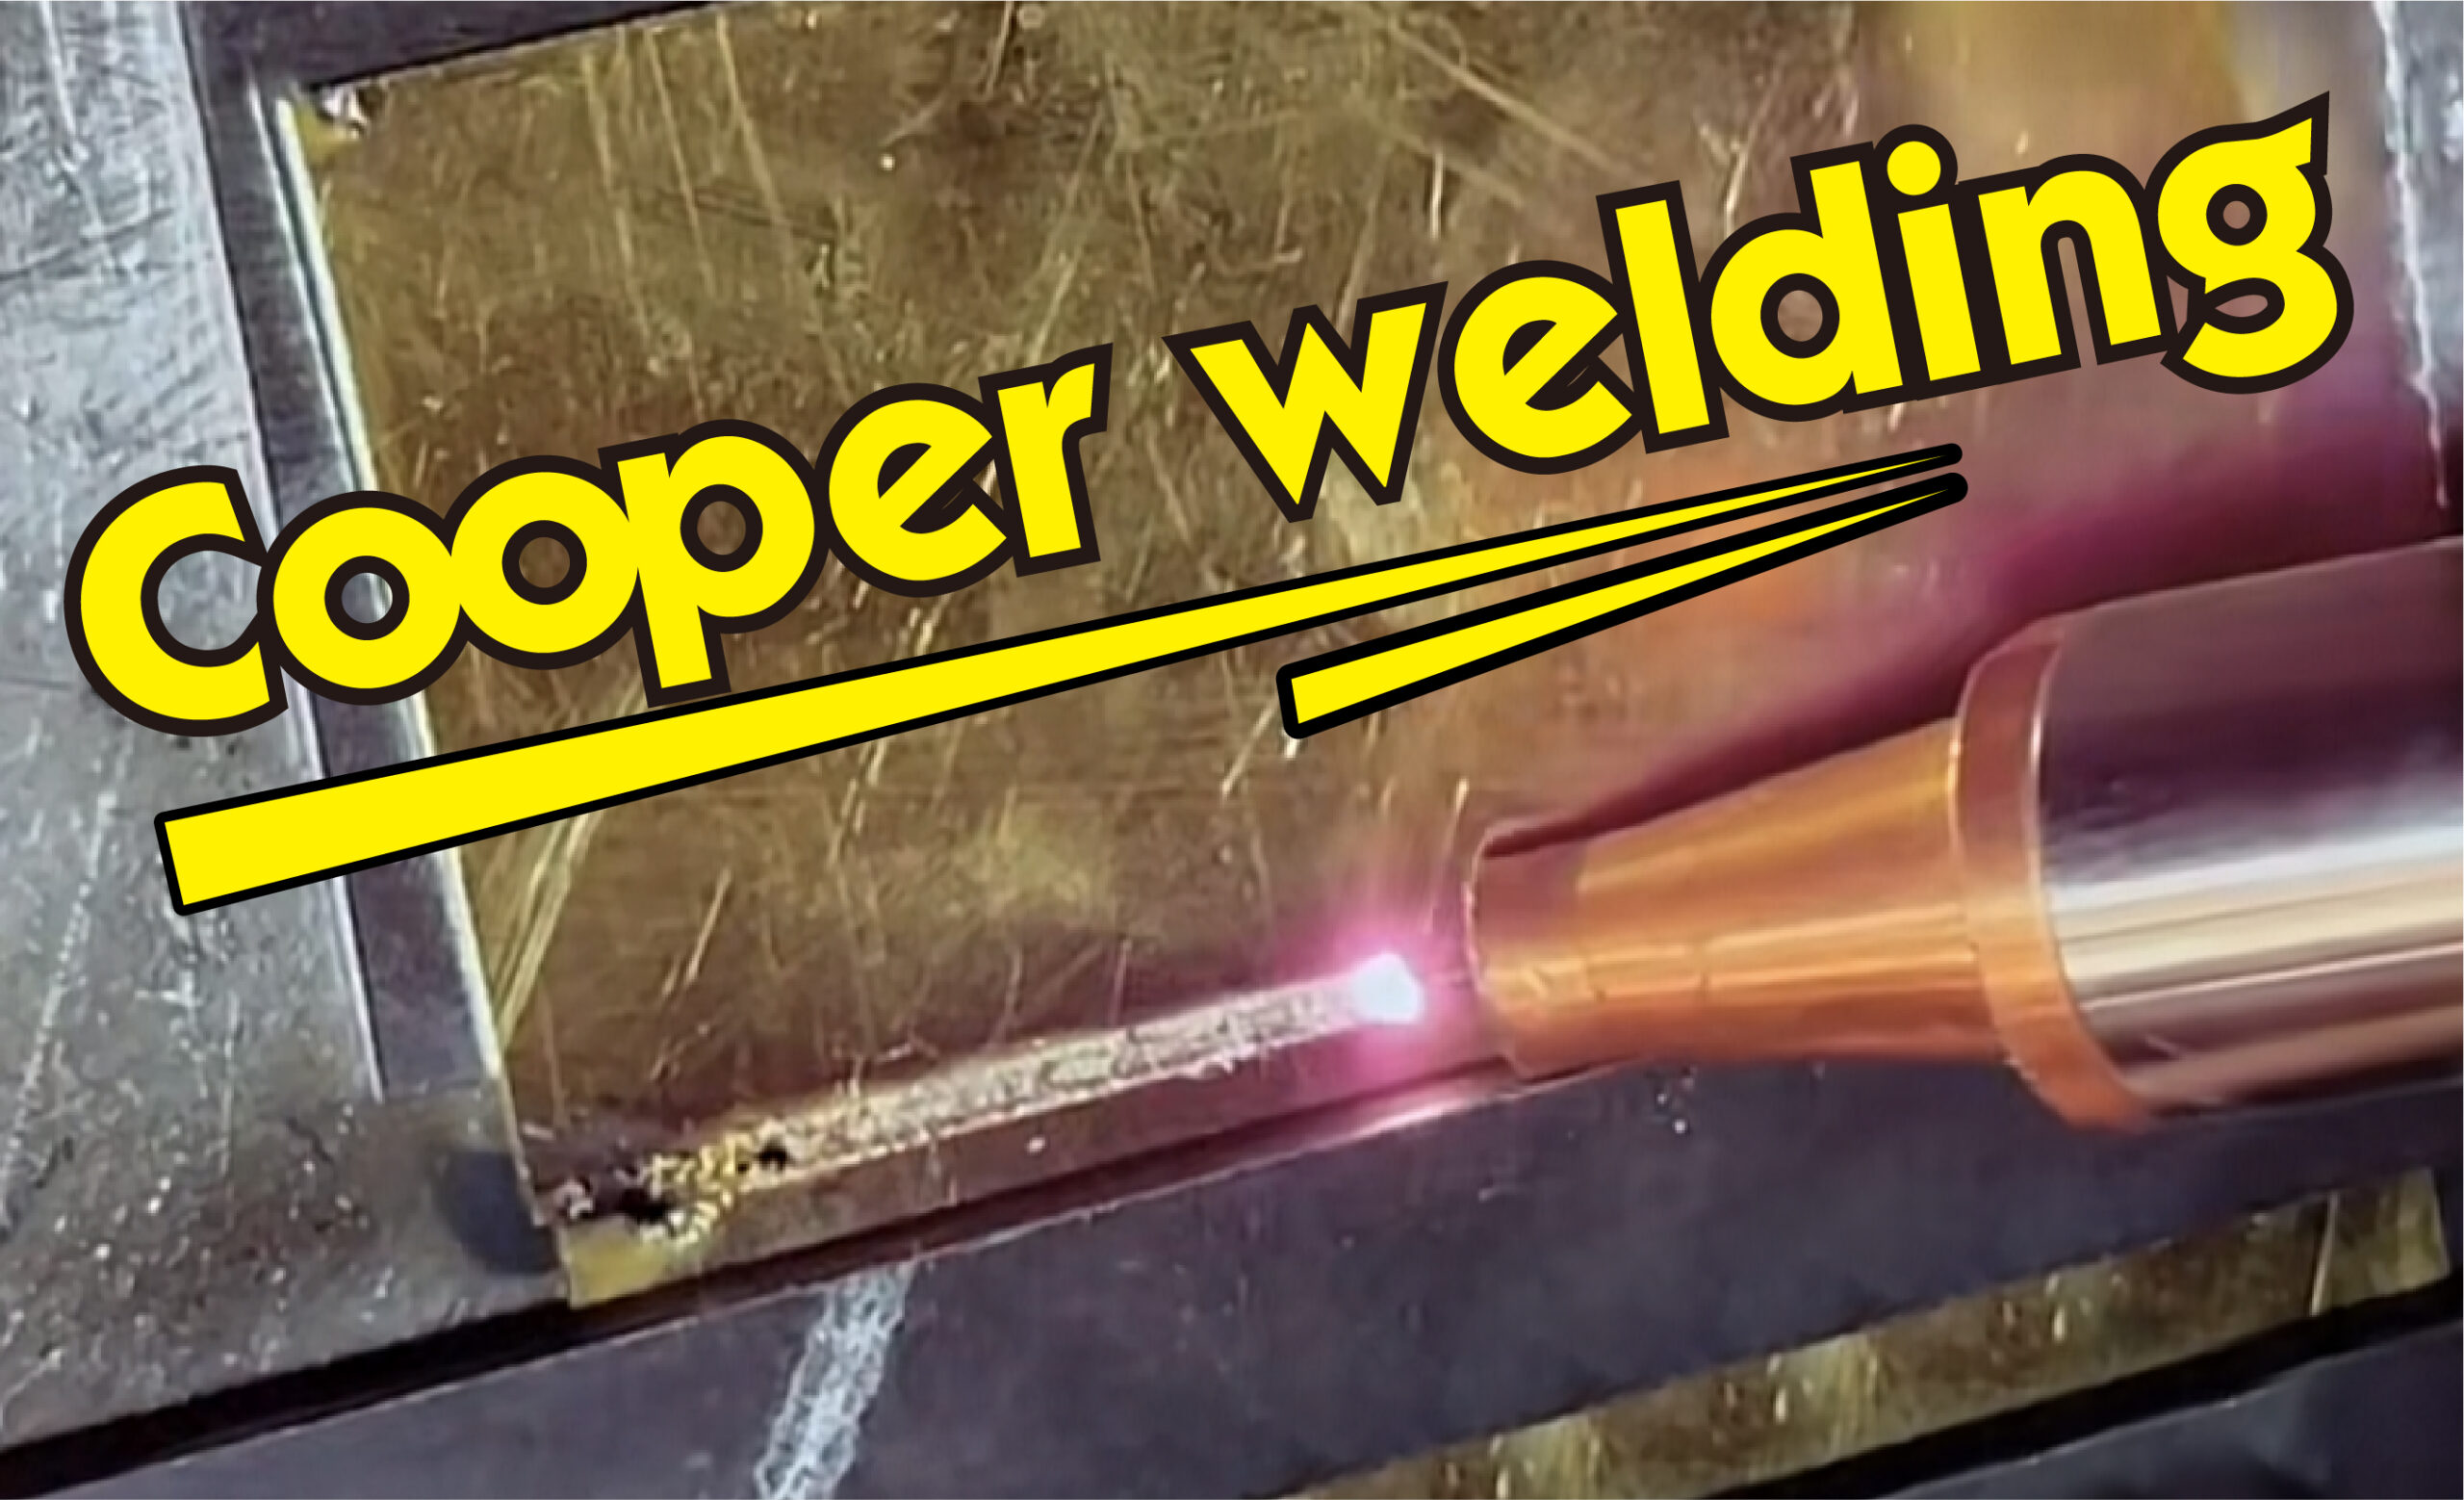 Cooper welding cover